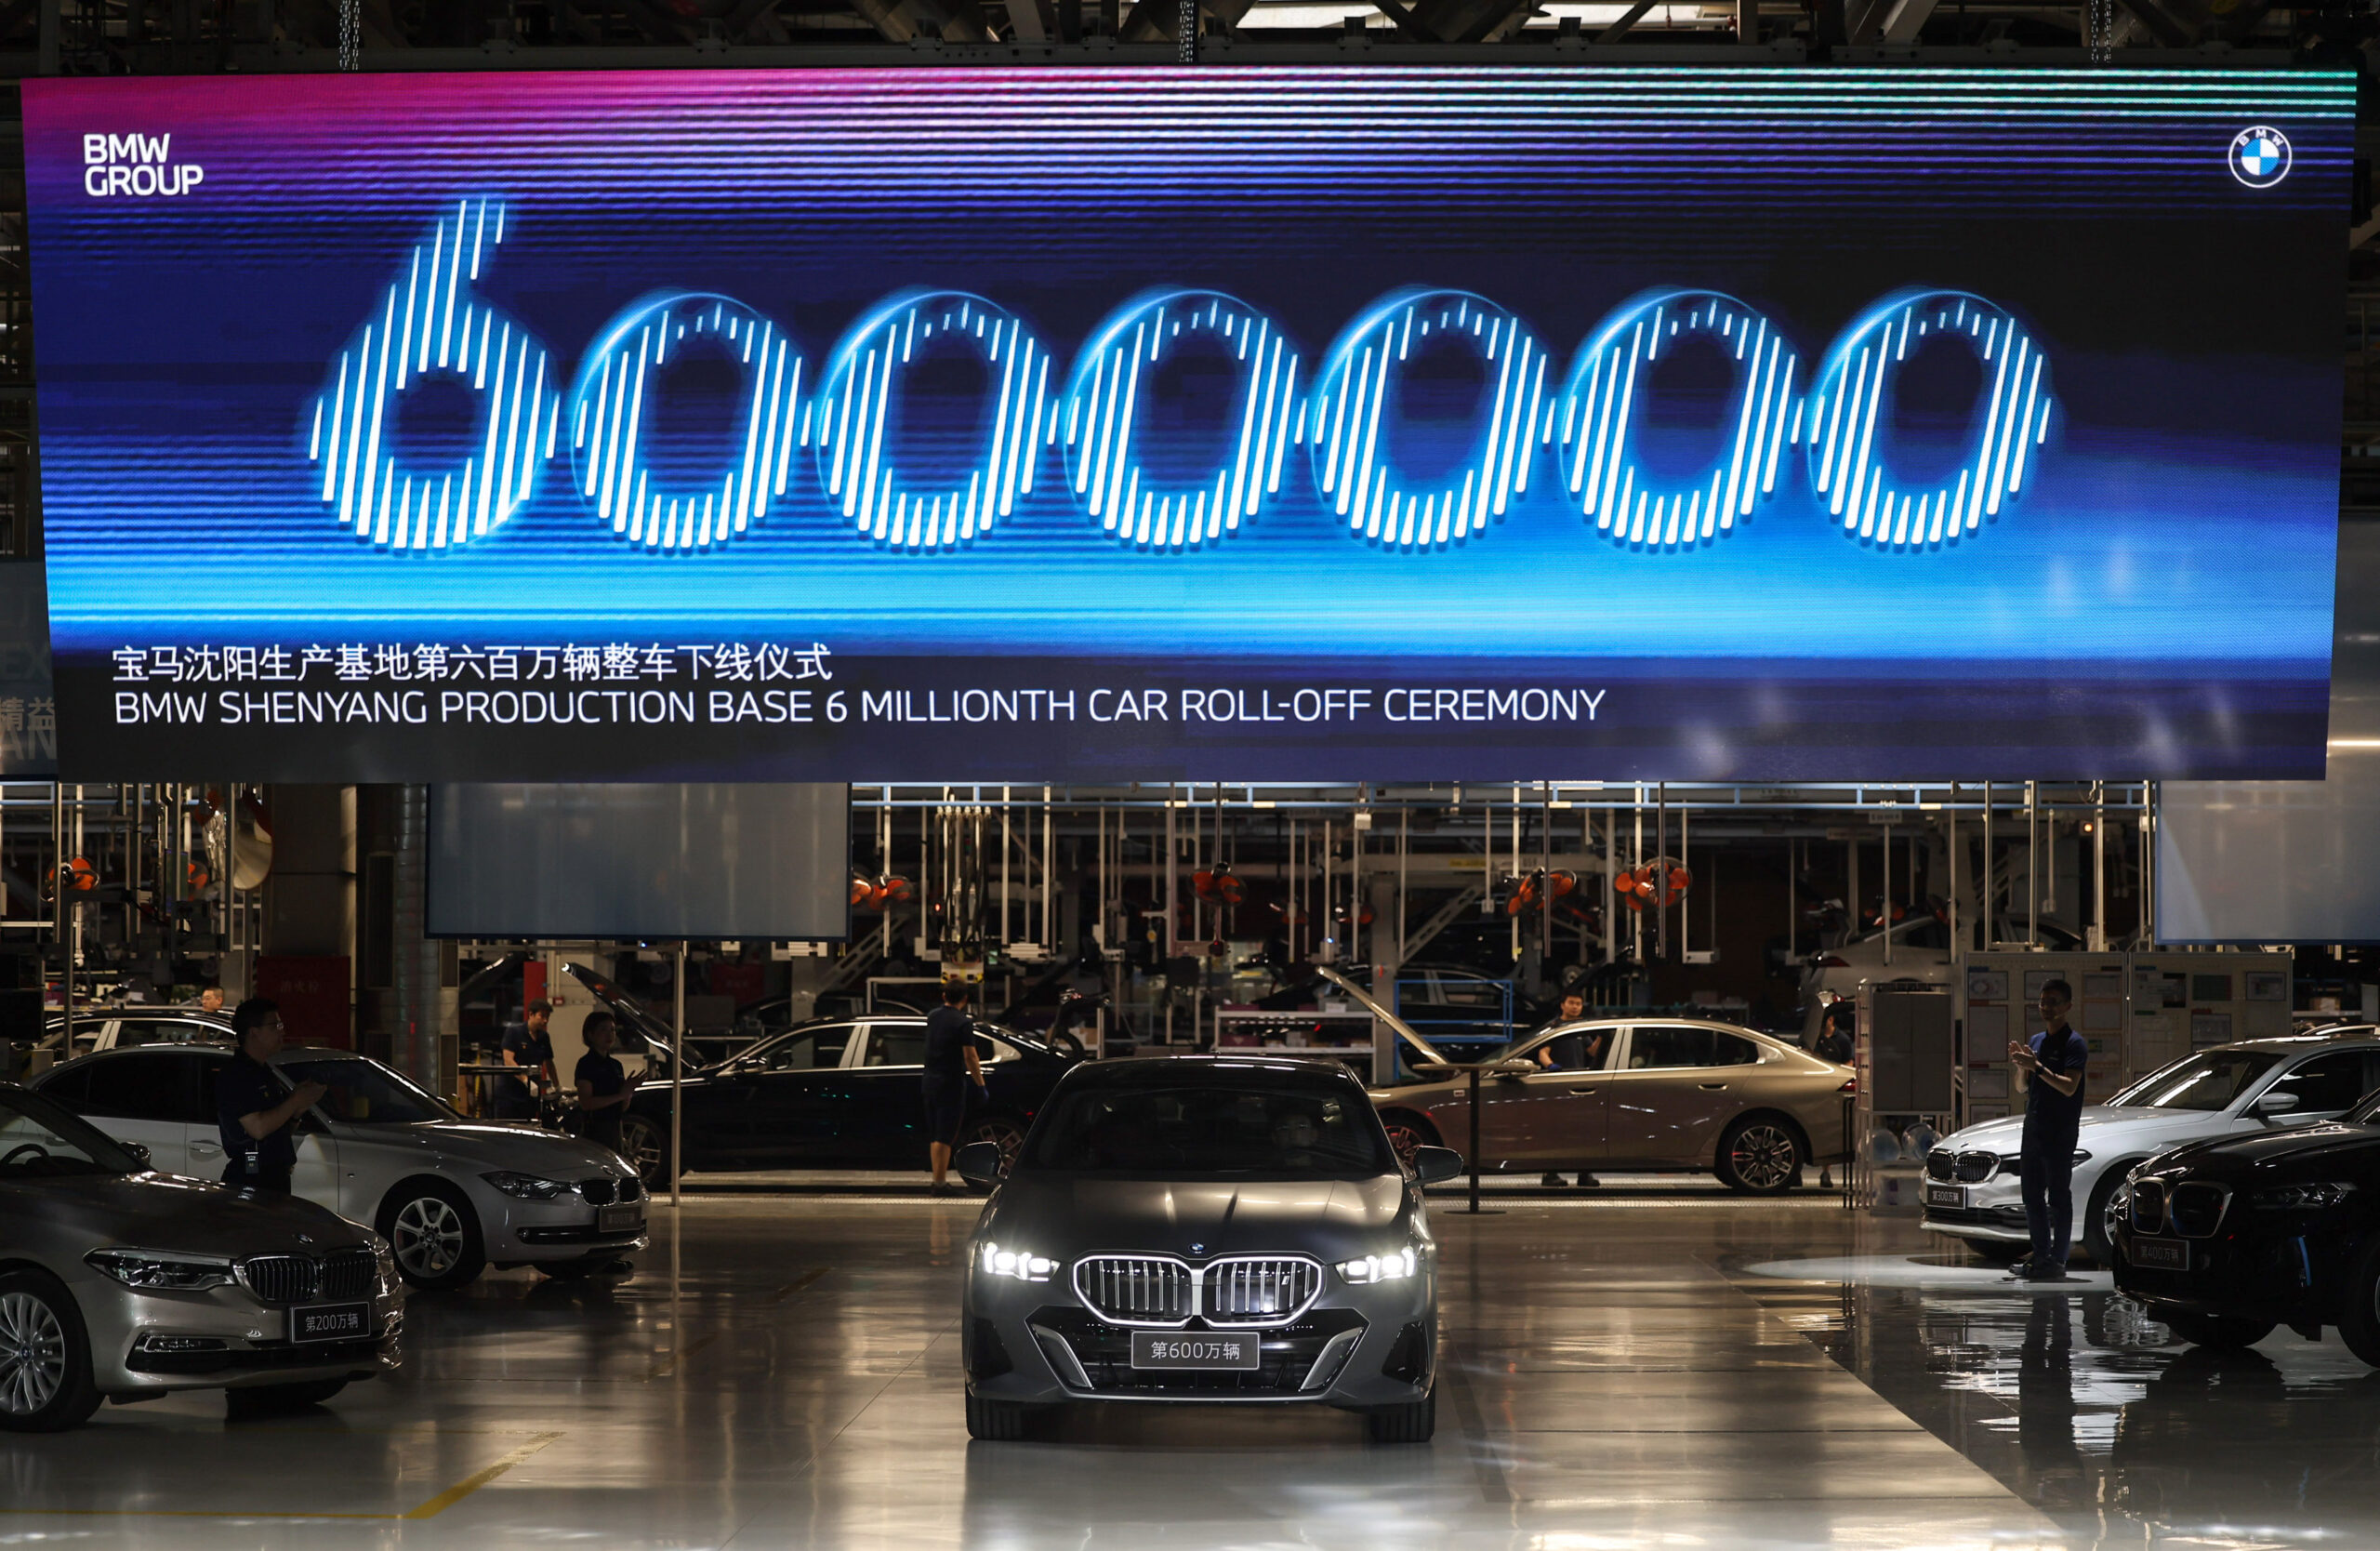 บีเอ็มดับเบิลยู บริลเลียนส์ ผลิตรถยนต์ในจีนครบ 6 ล้านคัน